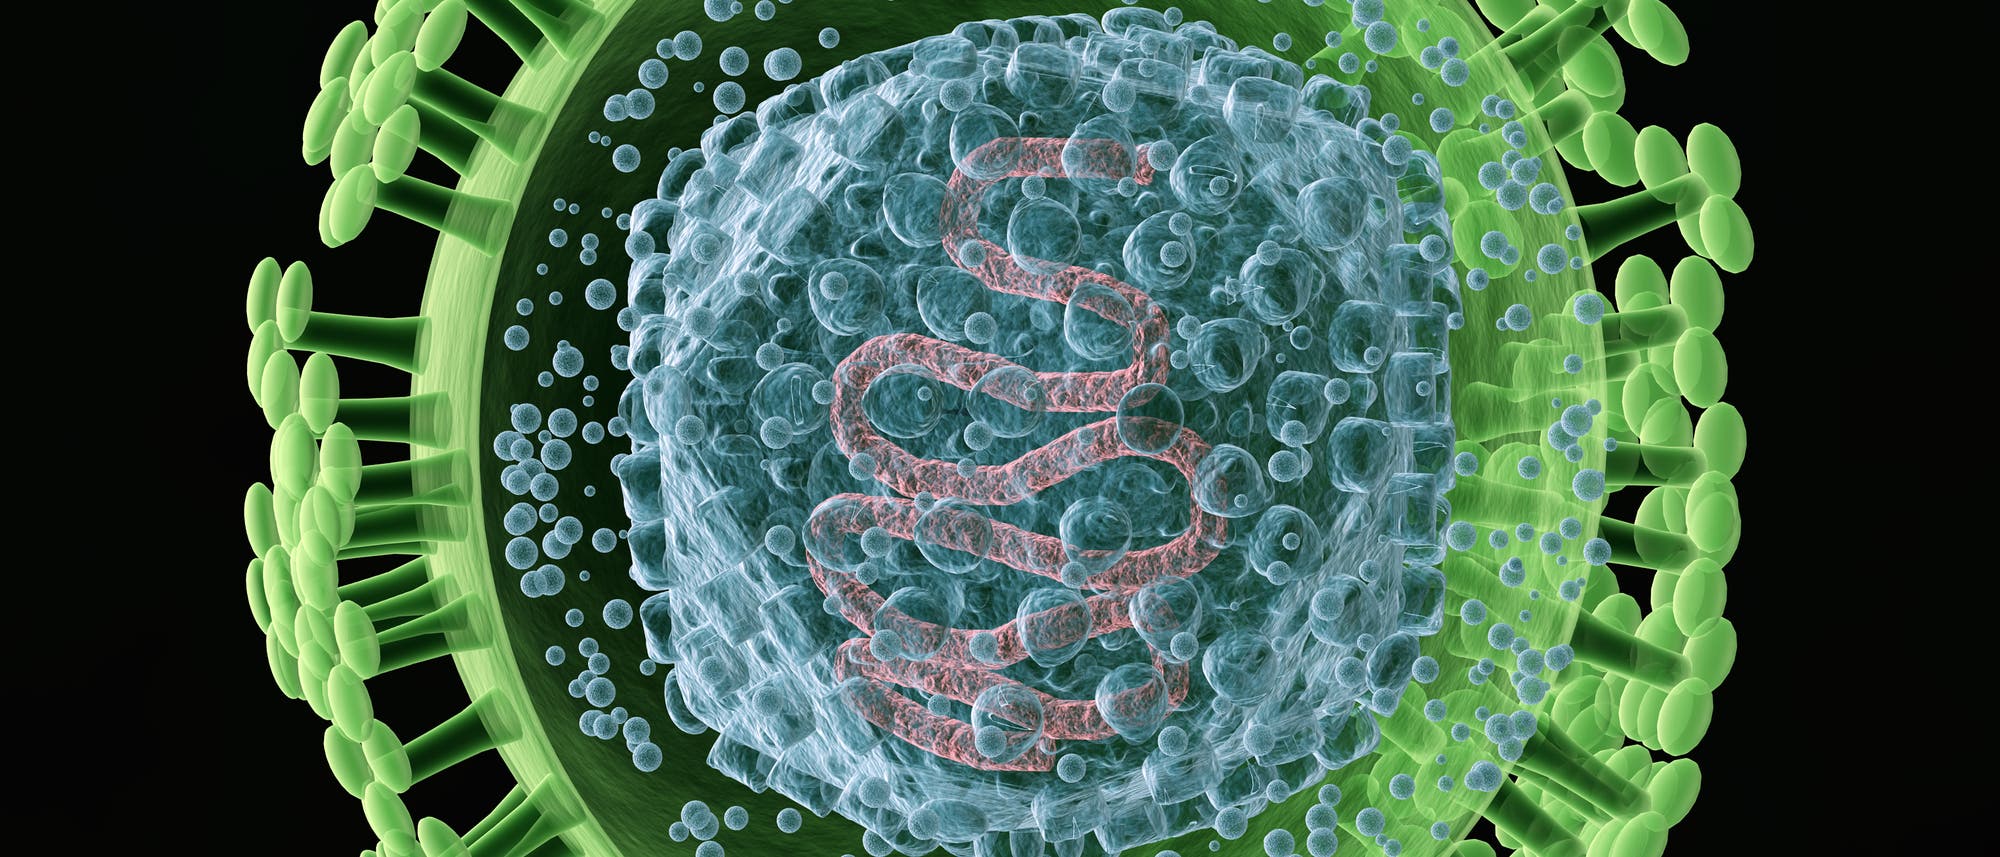 Viele Menschen sind mit Herpes-Viren infiziert